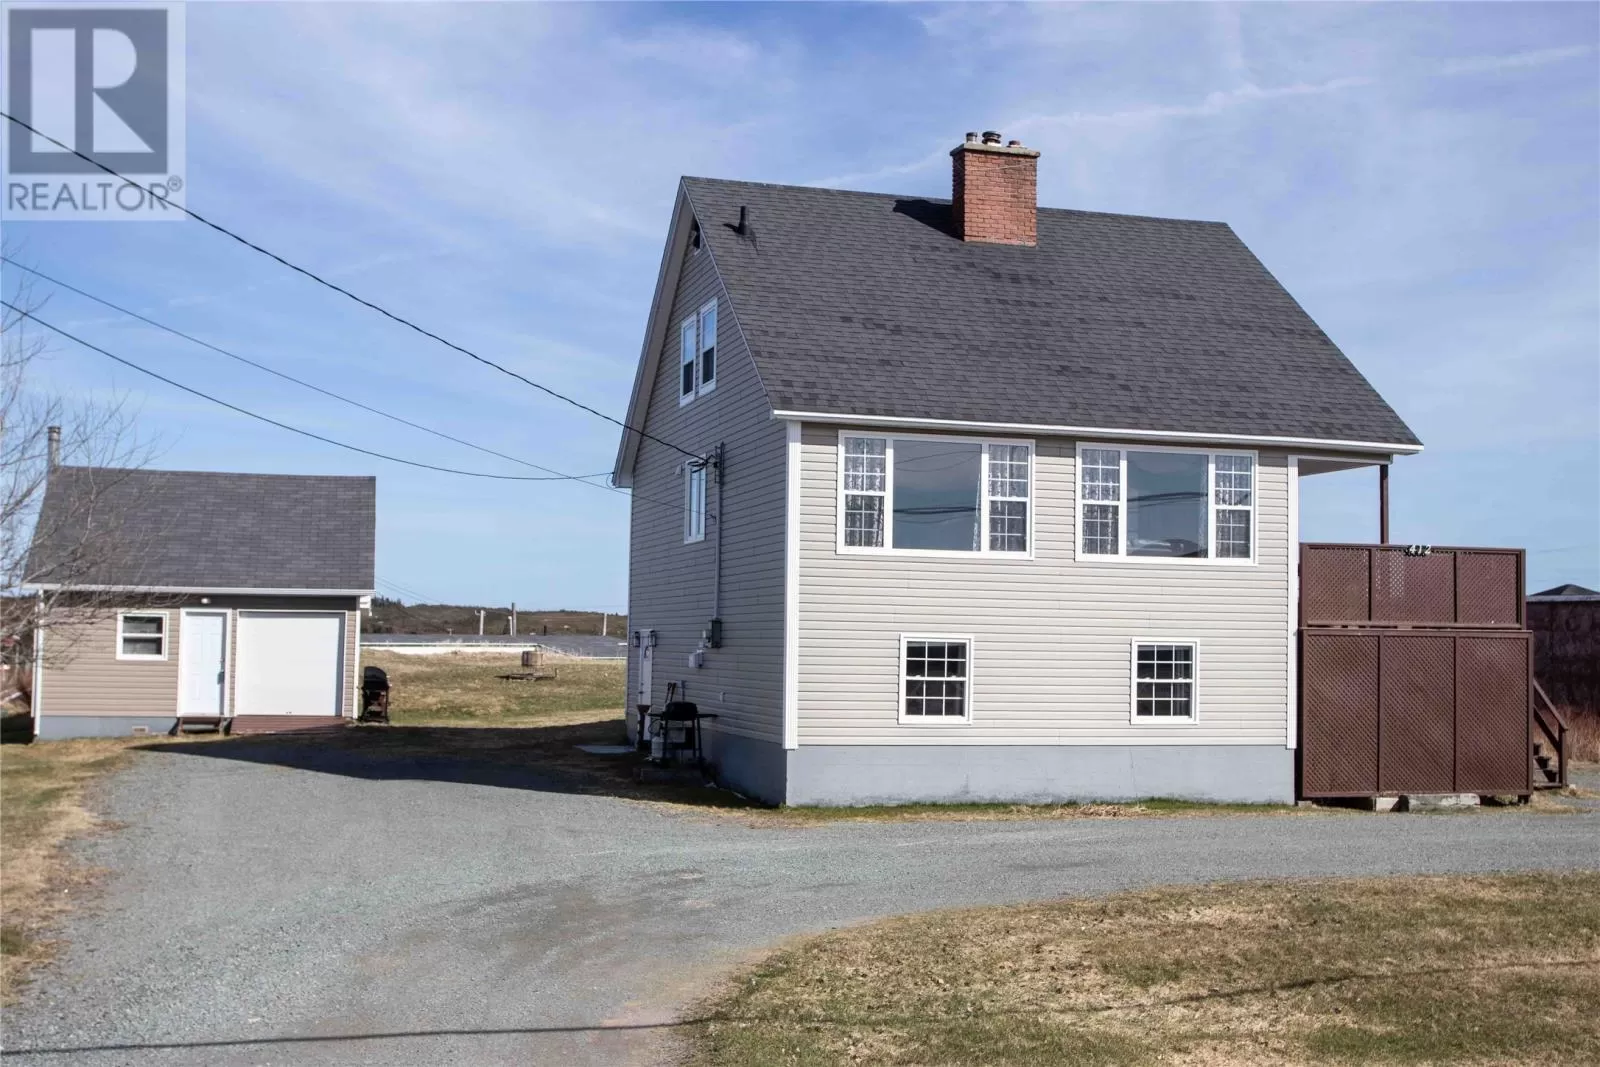 House for rent: 412 Discovery Trail, Catalina, Newfoundland & Labrador A0C 1J0